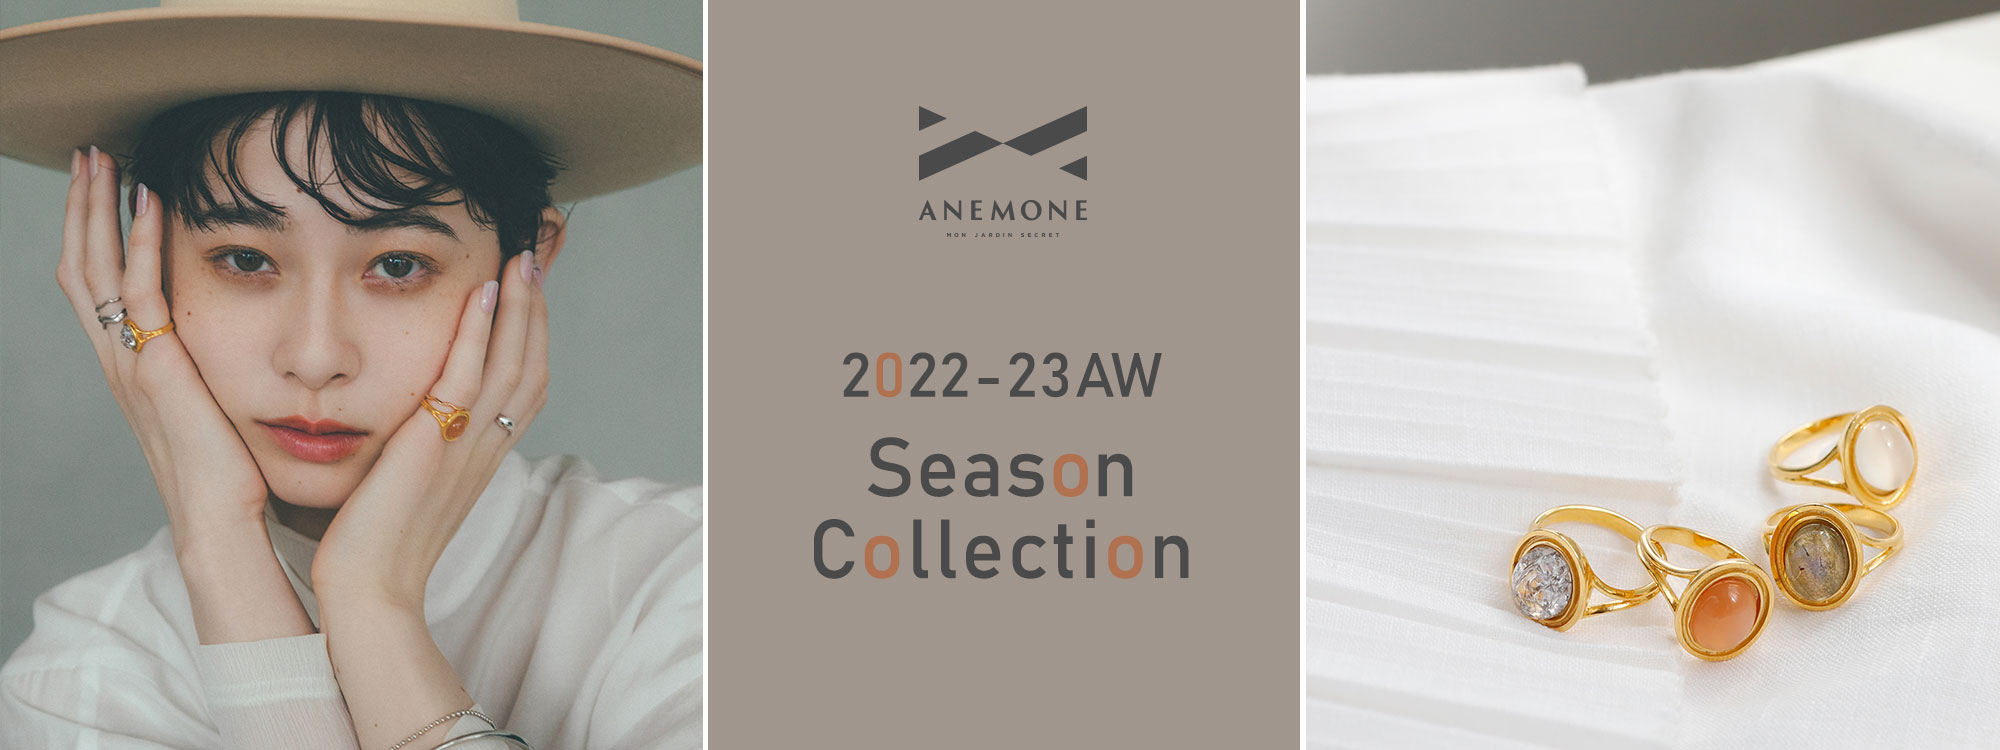 22-23AW Season Collection